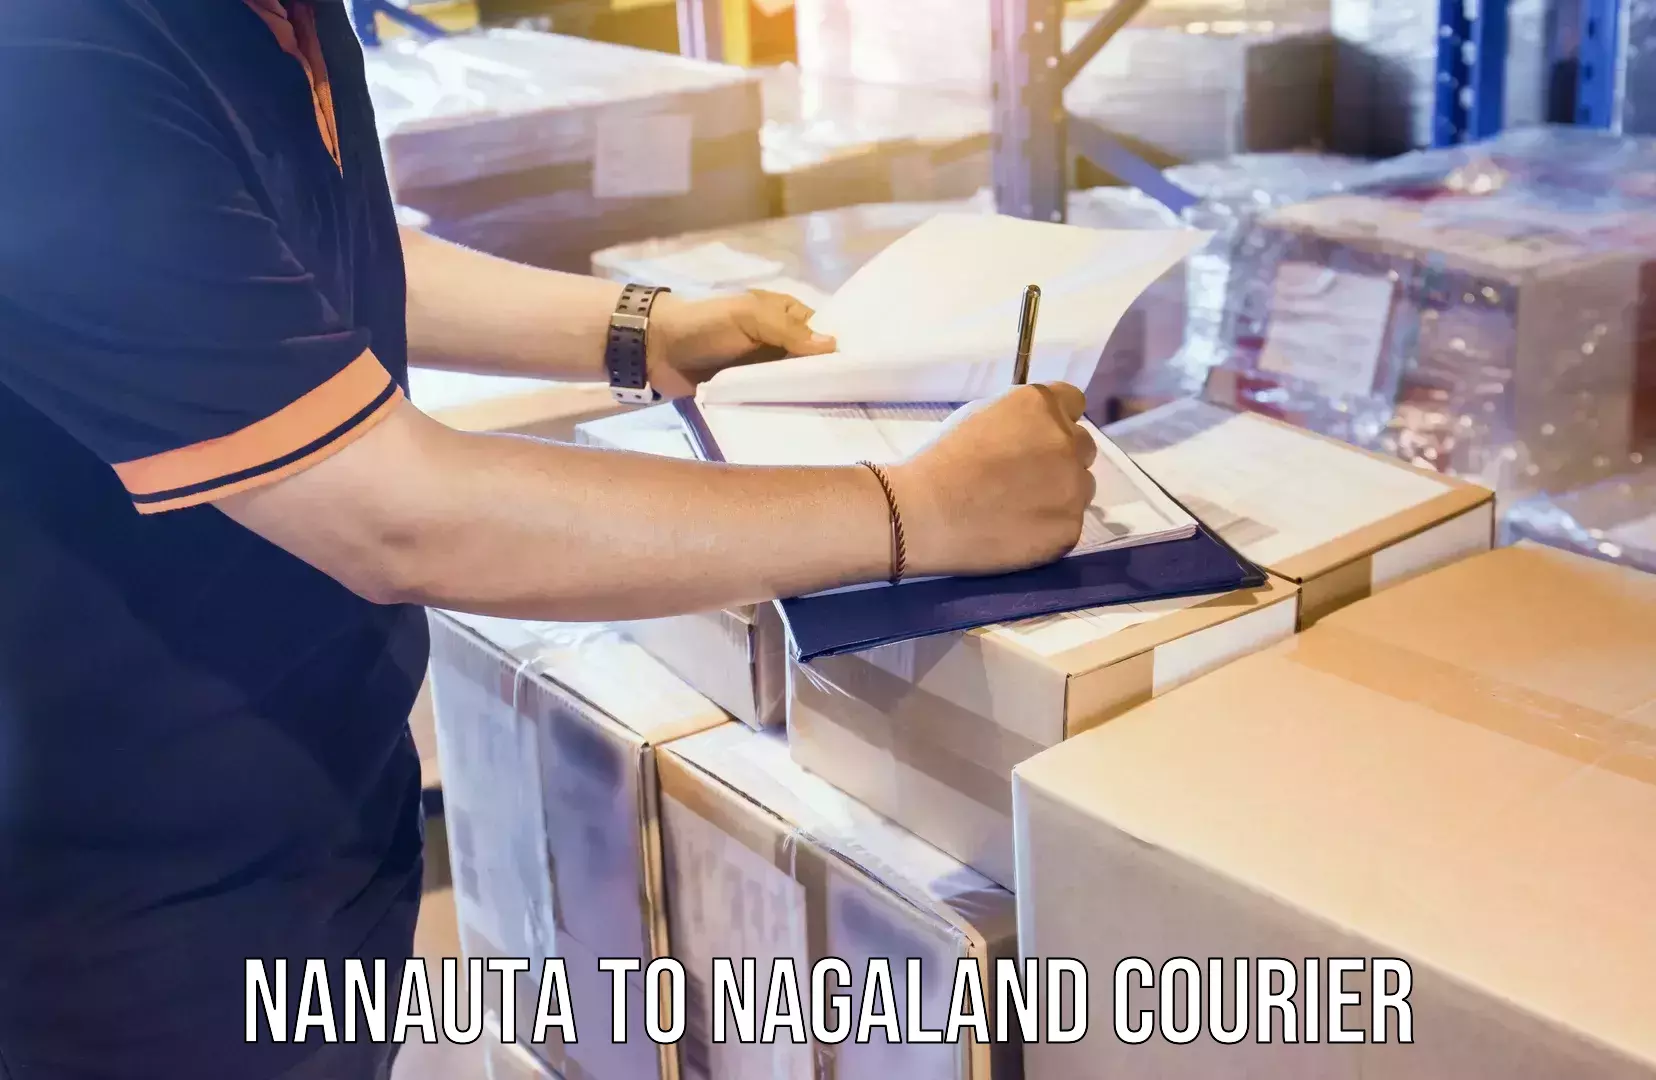 Moving and packing experts Nanauta to Nagaland